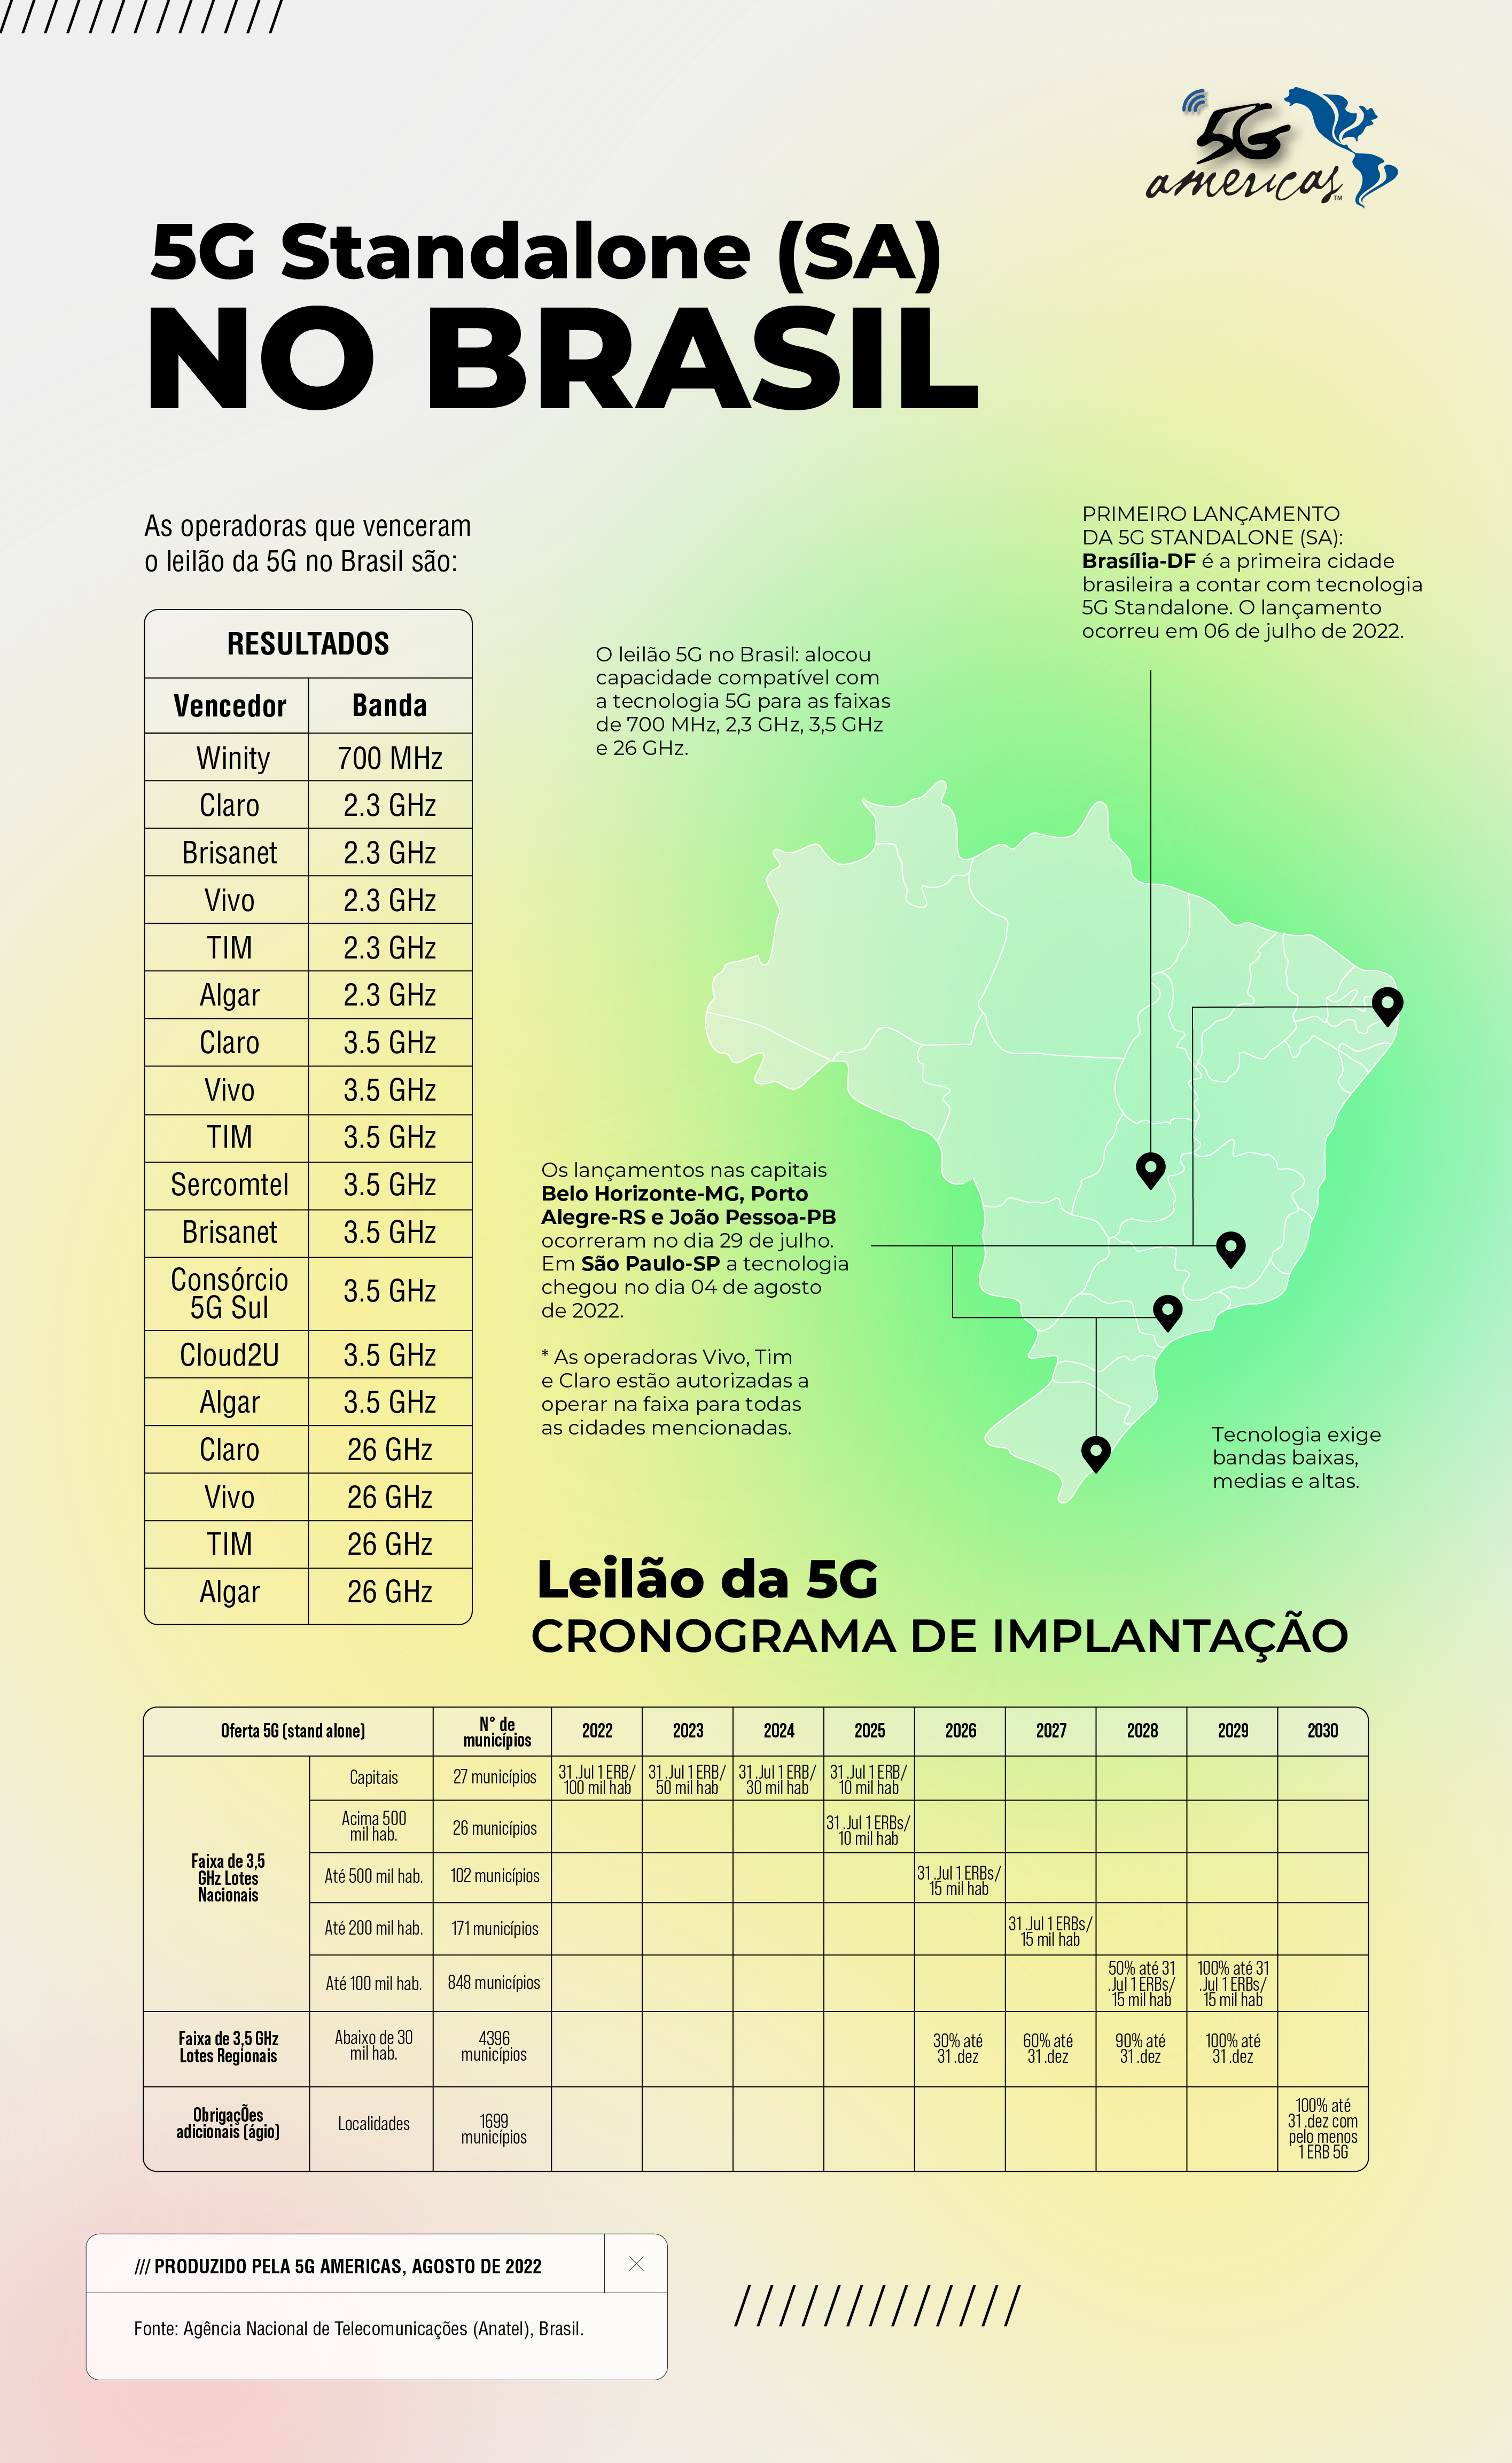 0da60962 ad0f 4a73 8ea1 807ce54cbfec - Infográfico 5G no Brasil